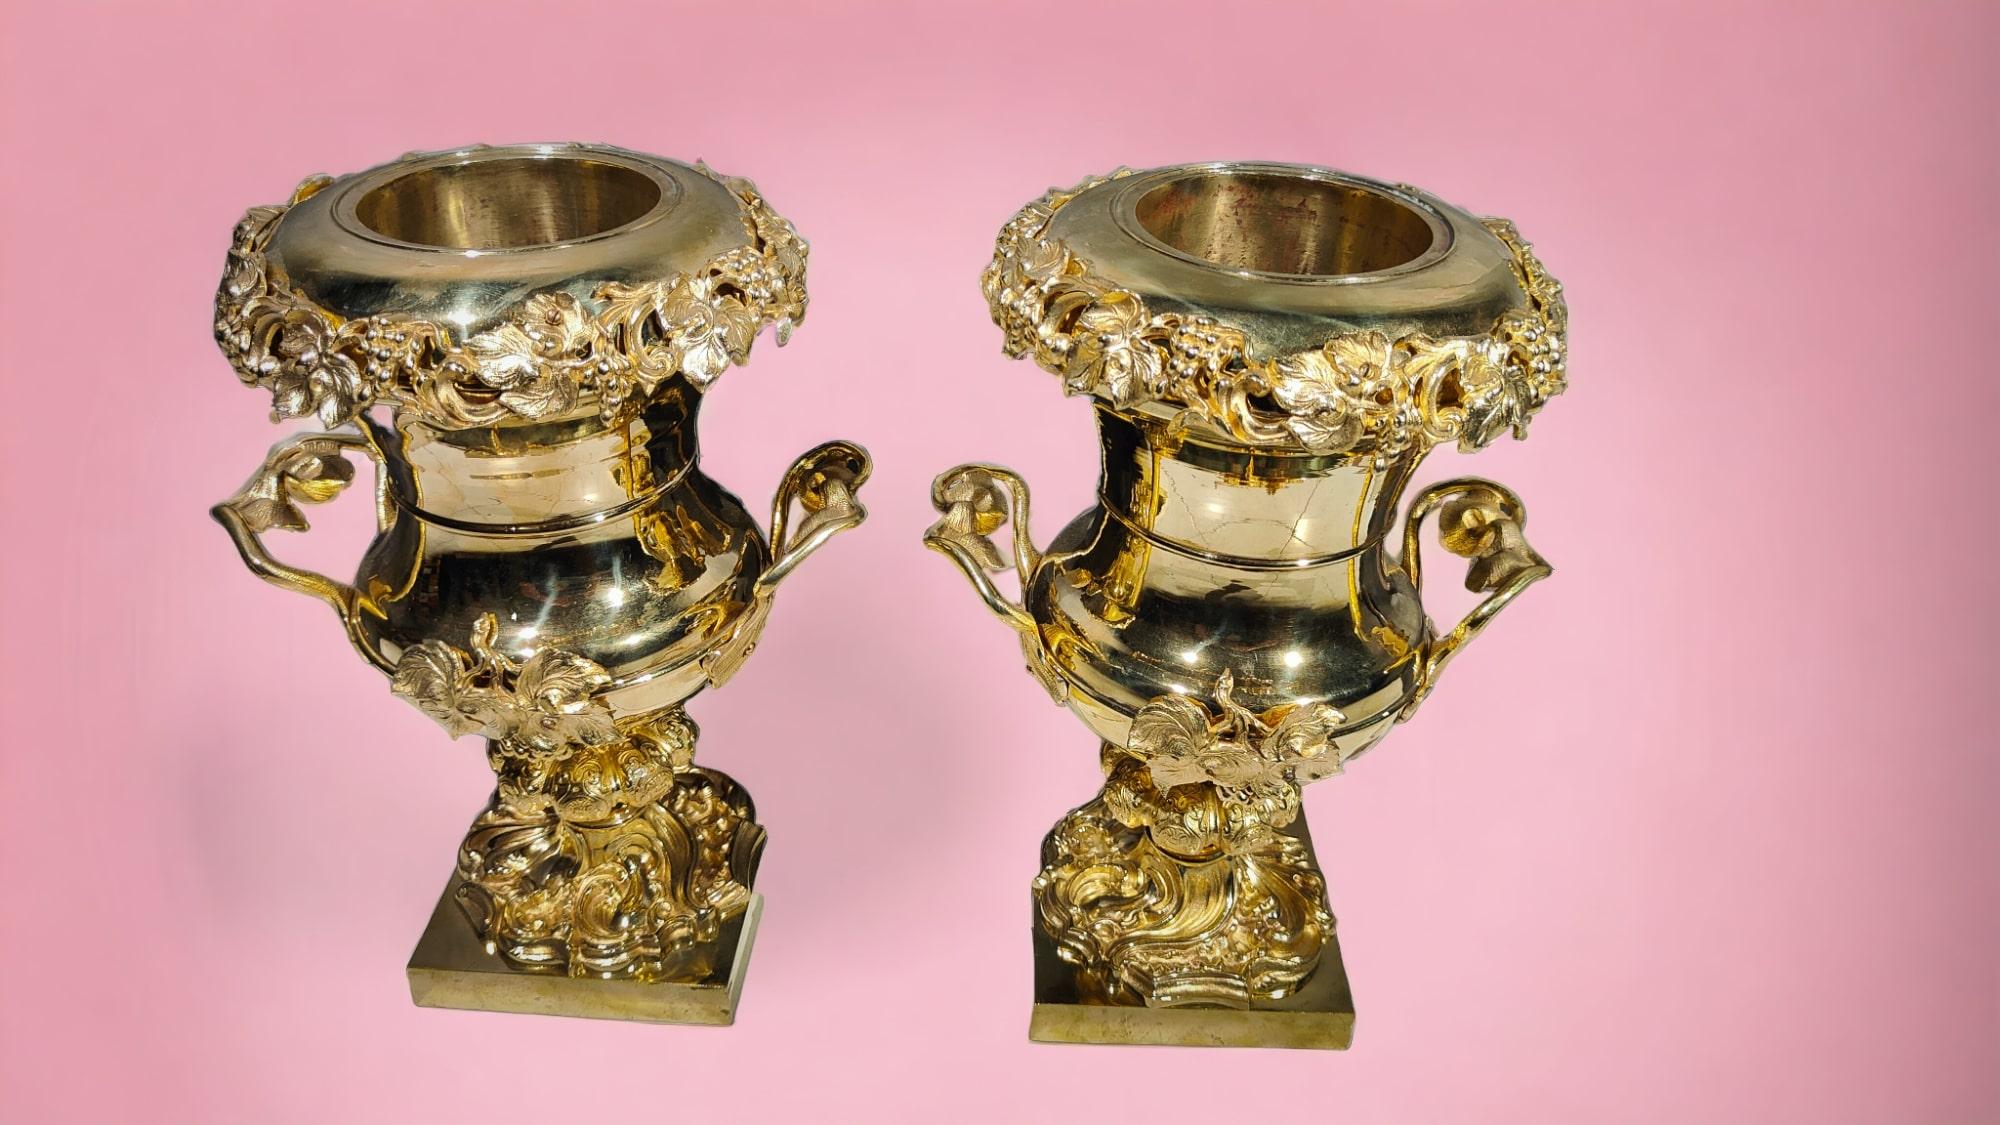 Paar vergoldete Bronzebecher aus dem 19. Jahrhundert
Großes Paar vergoldeter Bronzebecher aus dem 19. Jahrhundert. Guter Zustand. Abmessungen: 40x28x20 cm